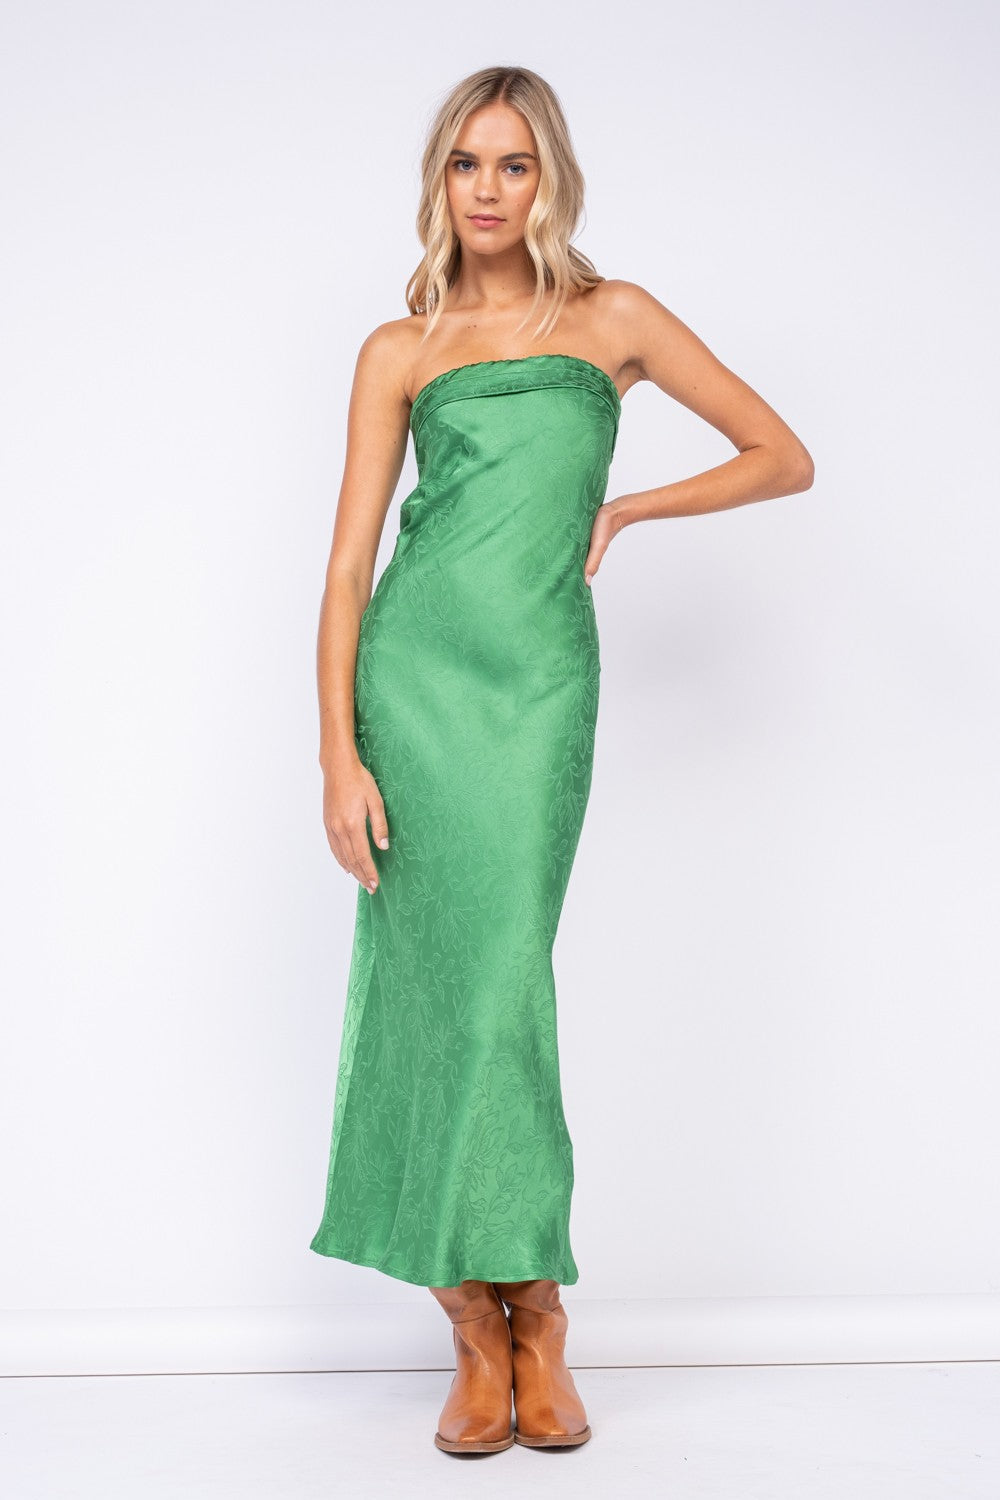 green strapless dress